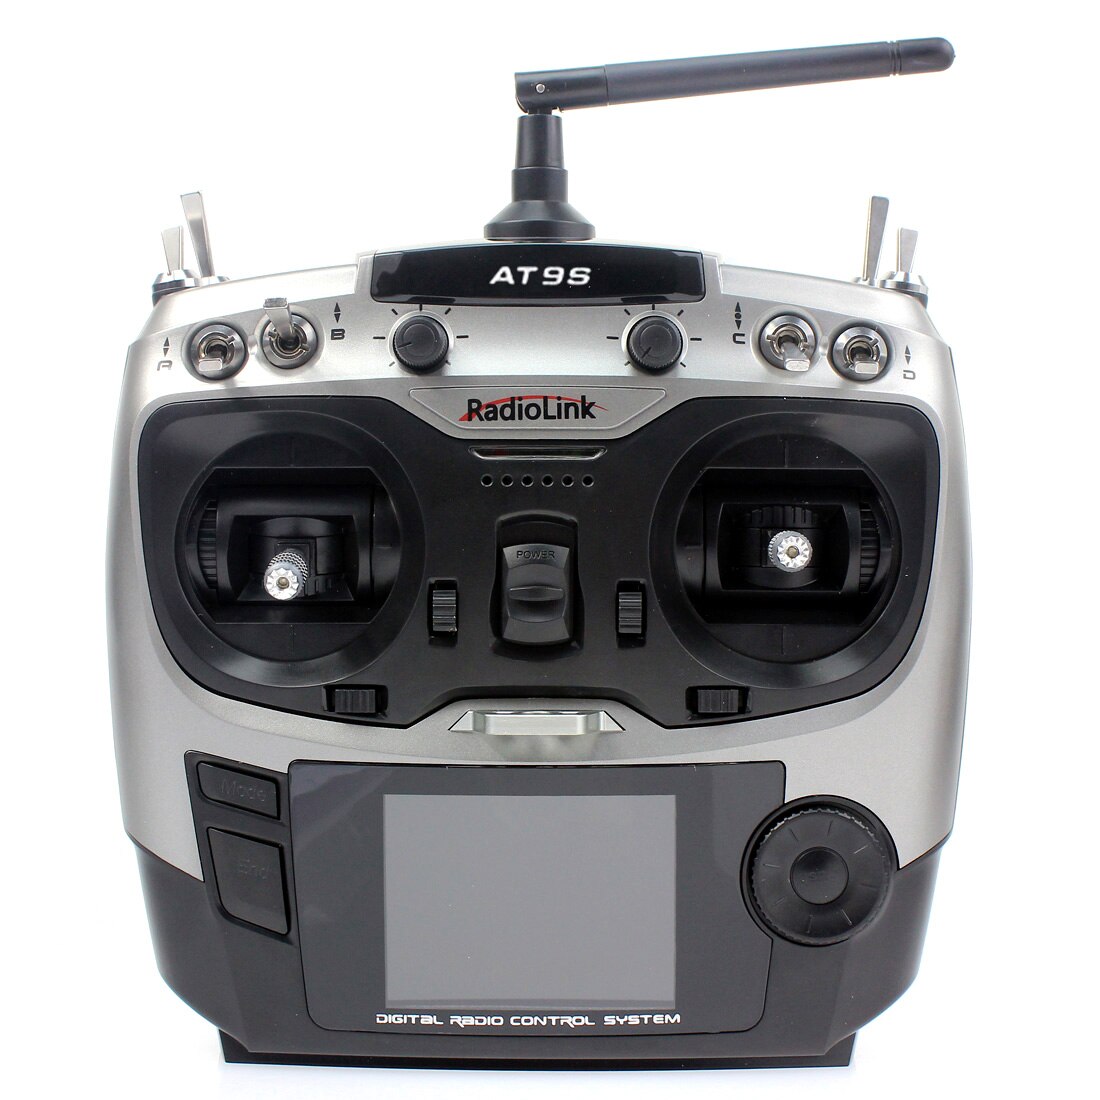 F08618-T DIY FPV Drone, At9s RadioLink 3 DigiTaL RADIO CONTROL SYS